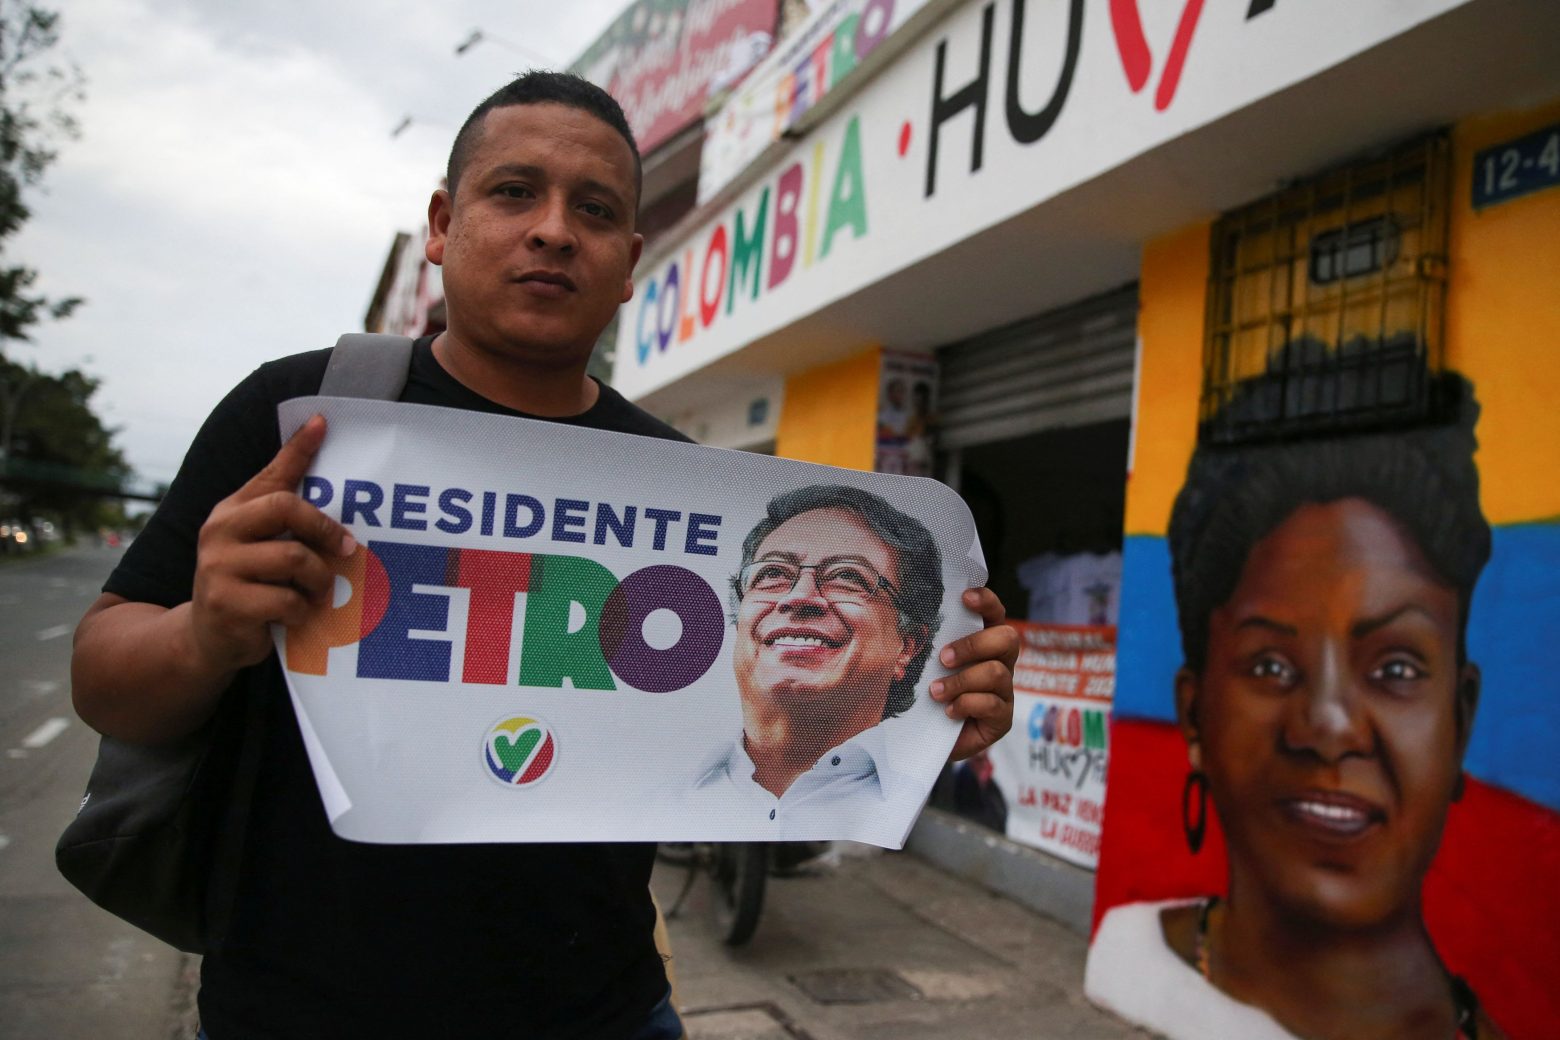 Κολομβία: Φαβορί ο Γκουστάβο Πέτρο στις εκλογές - Μπορεί να γίνει ο πρώτος αριστερός πρόεδρος στην ιστορία της χώρας